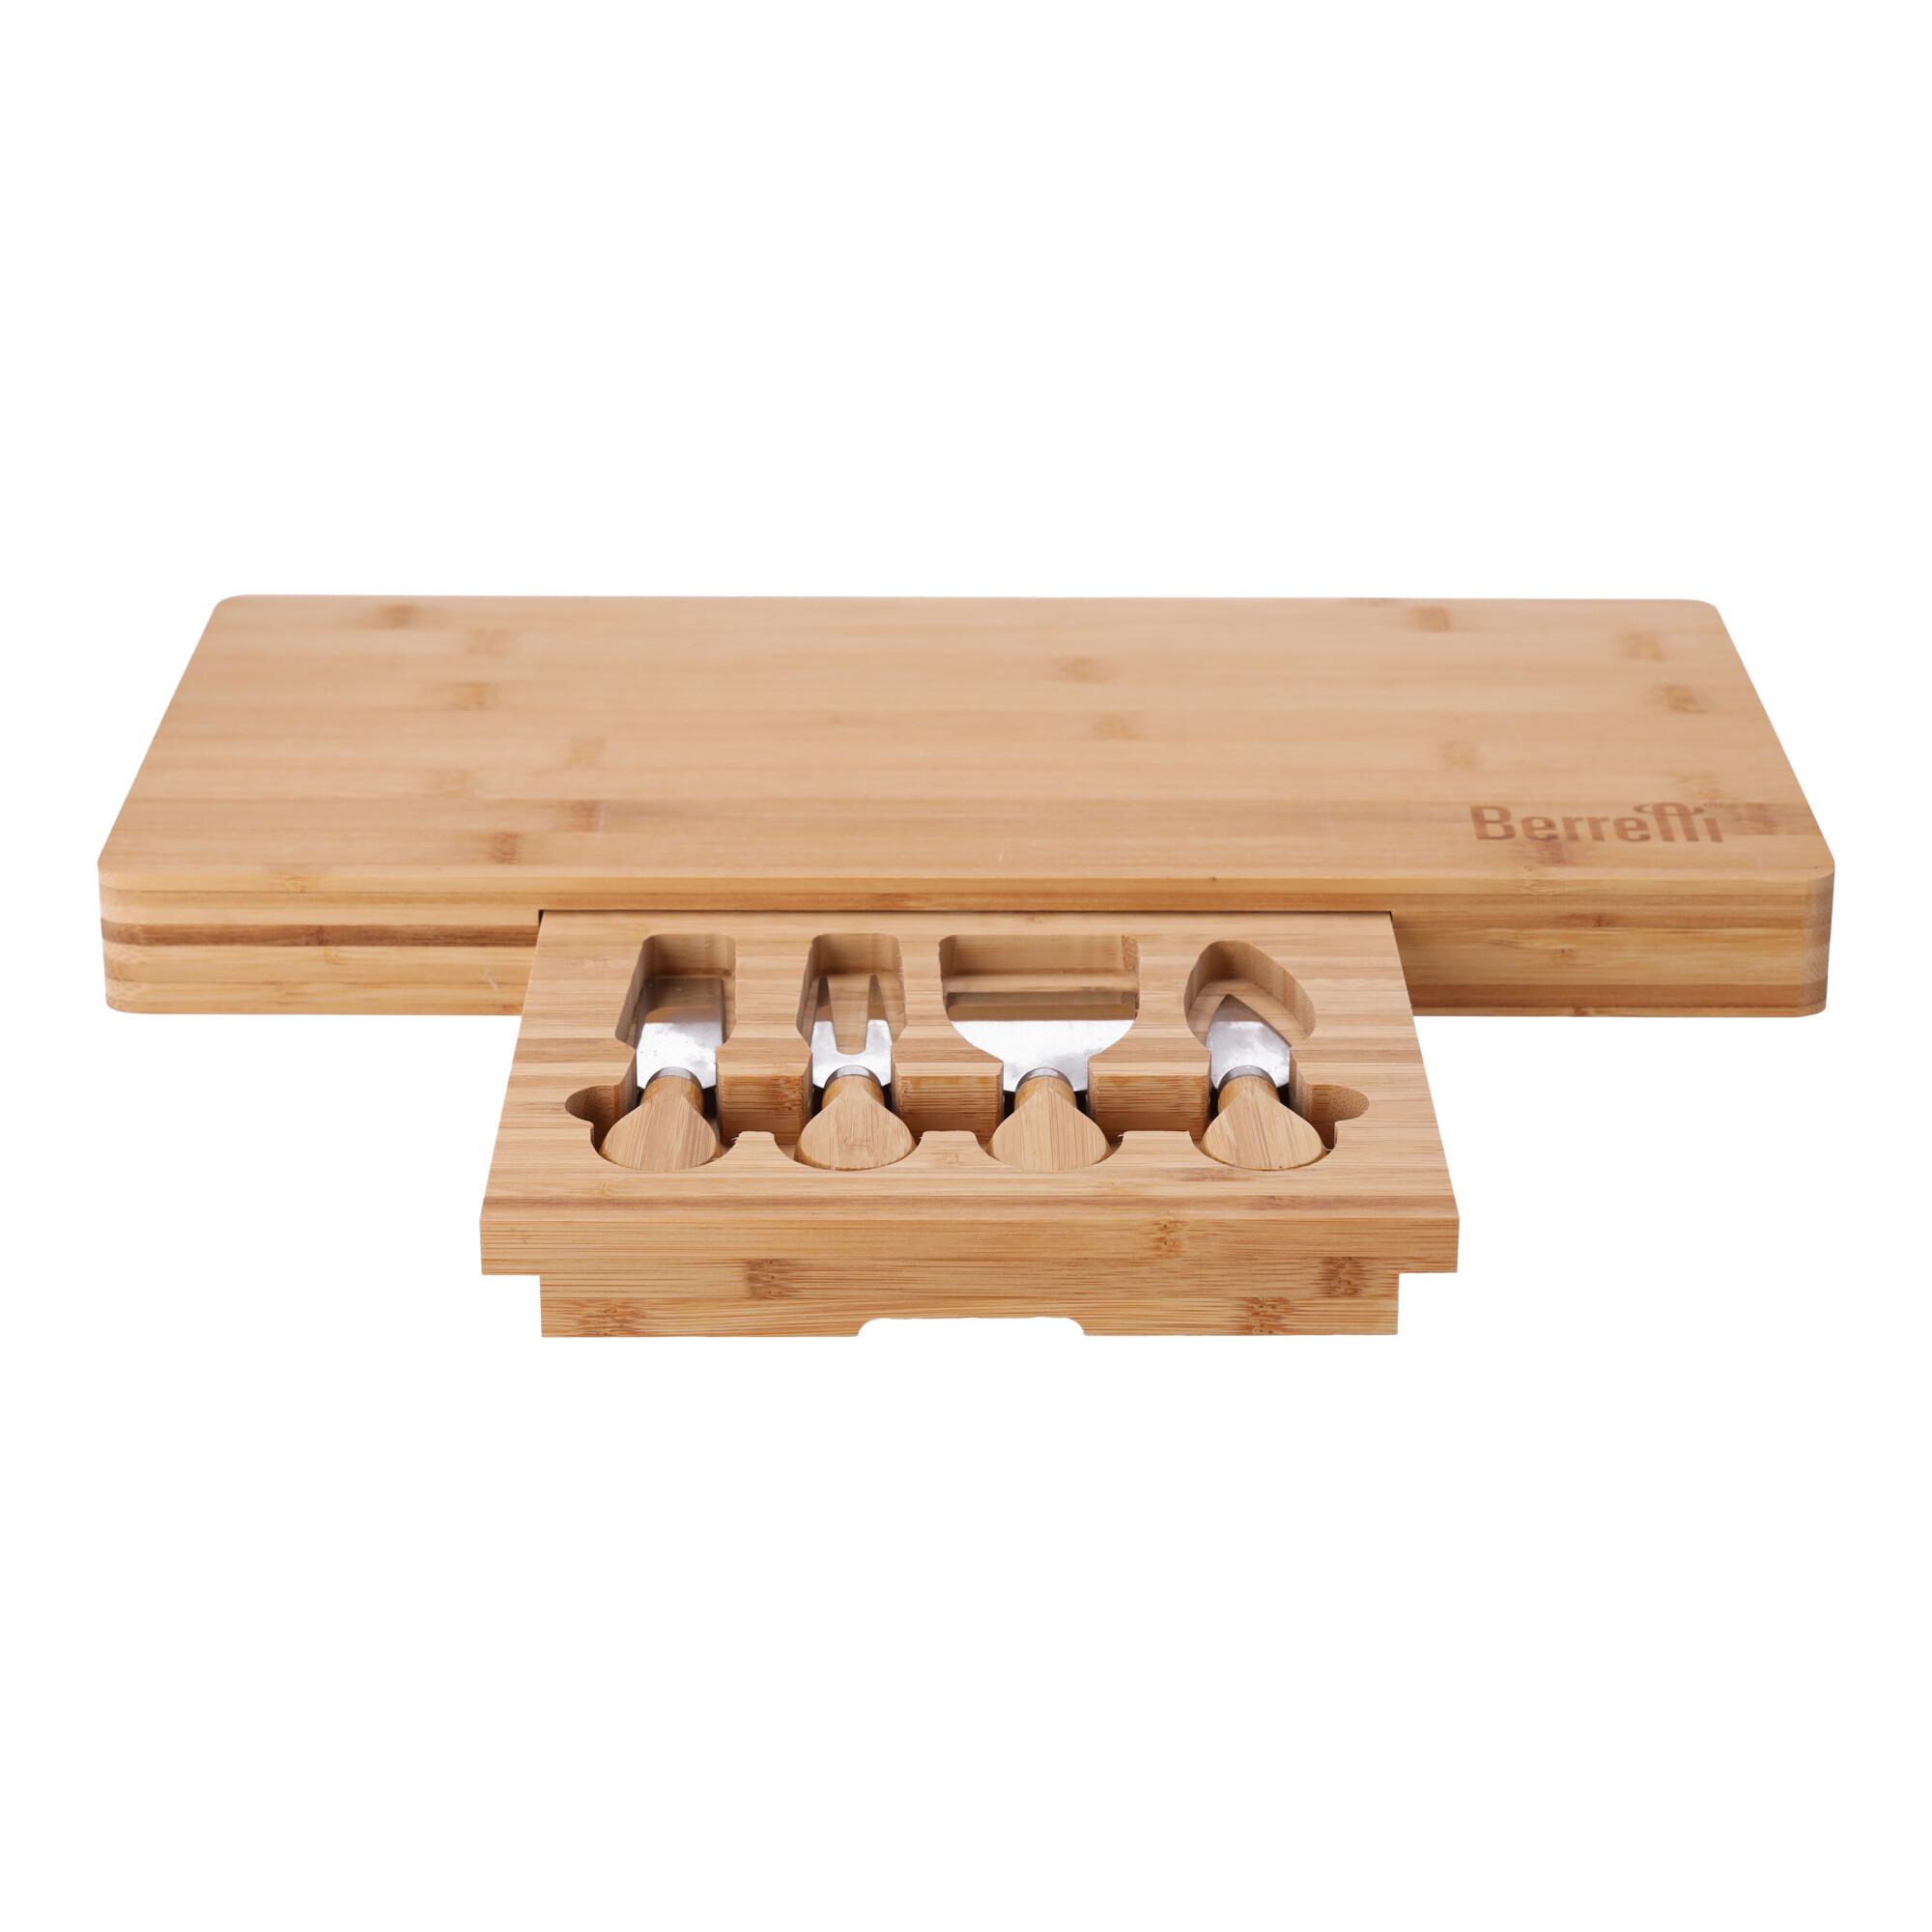 Bambusowa deska do serwowania serów z nożami BERRETTI, rozm. 45.5x22x4 cm